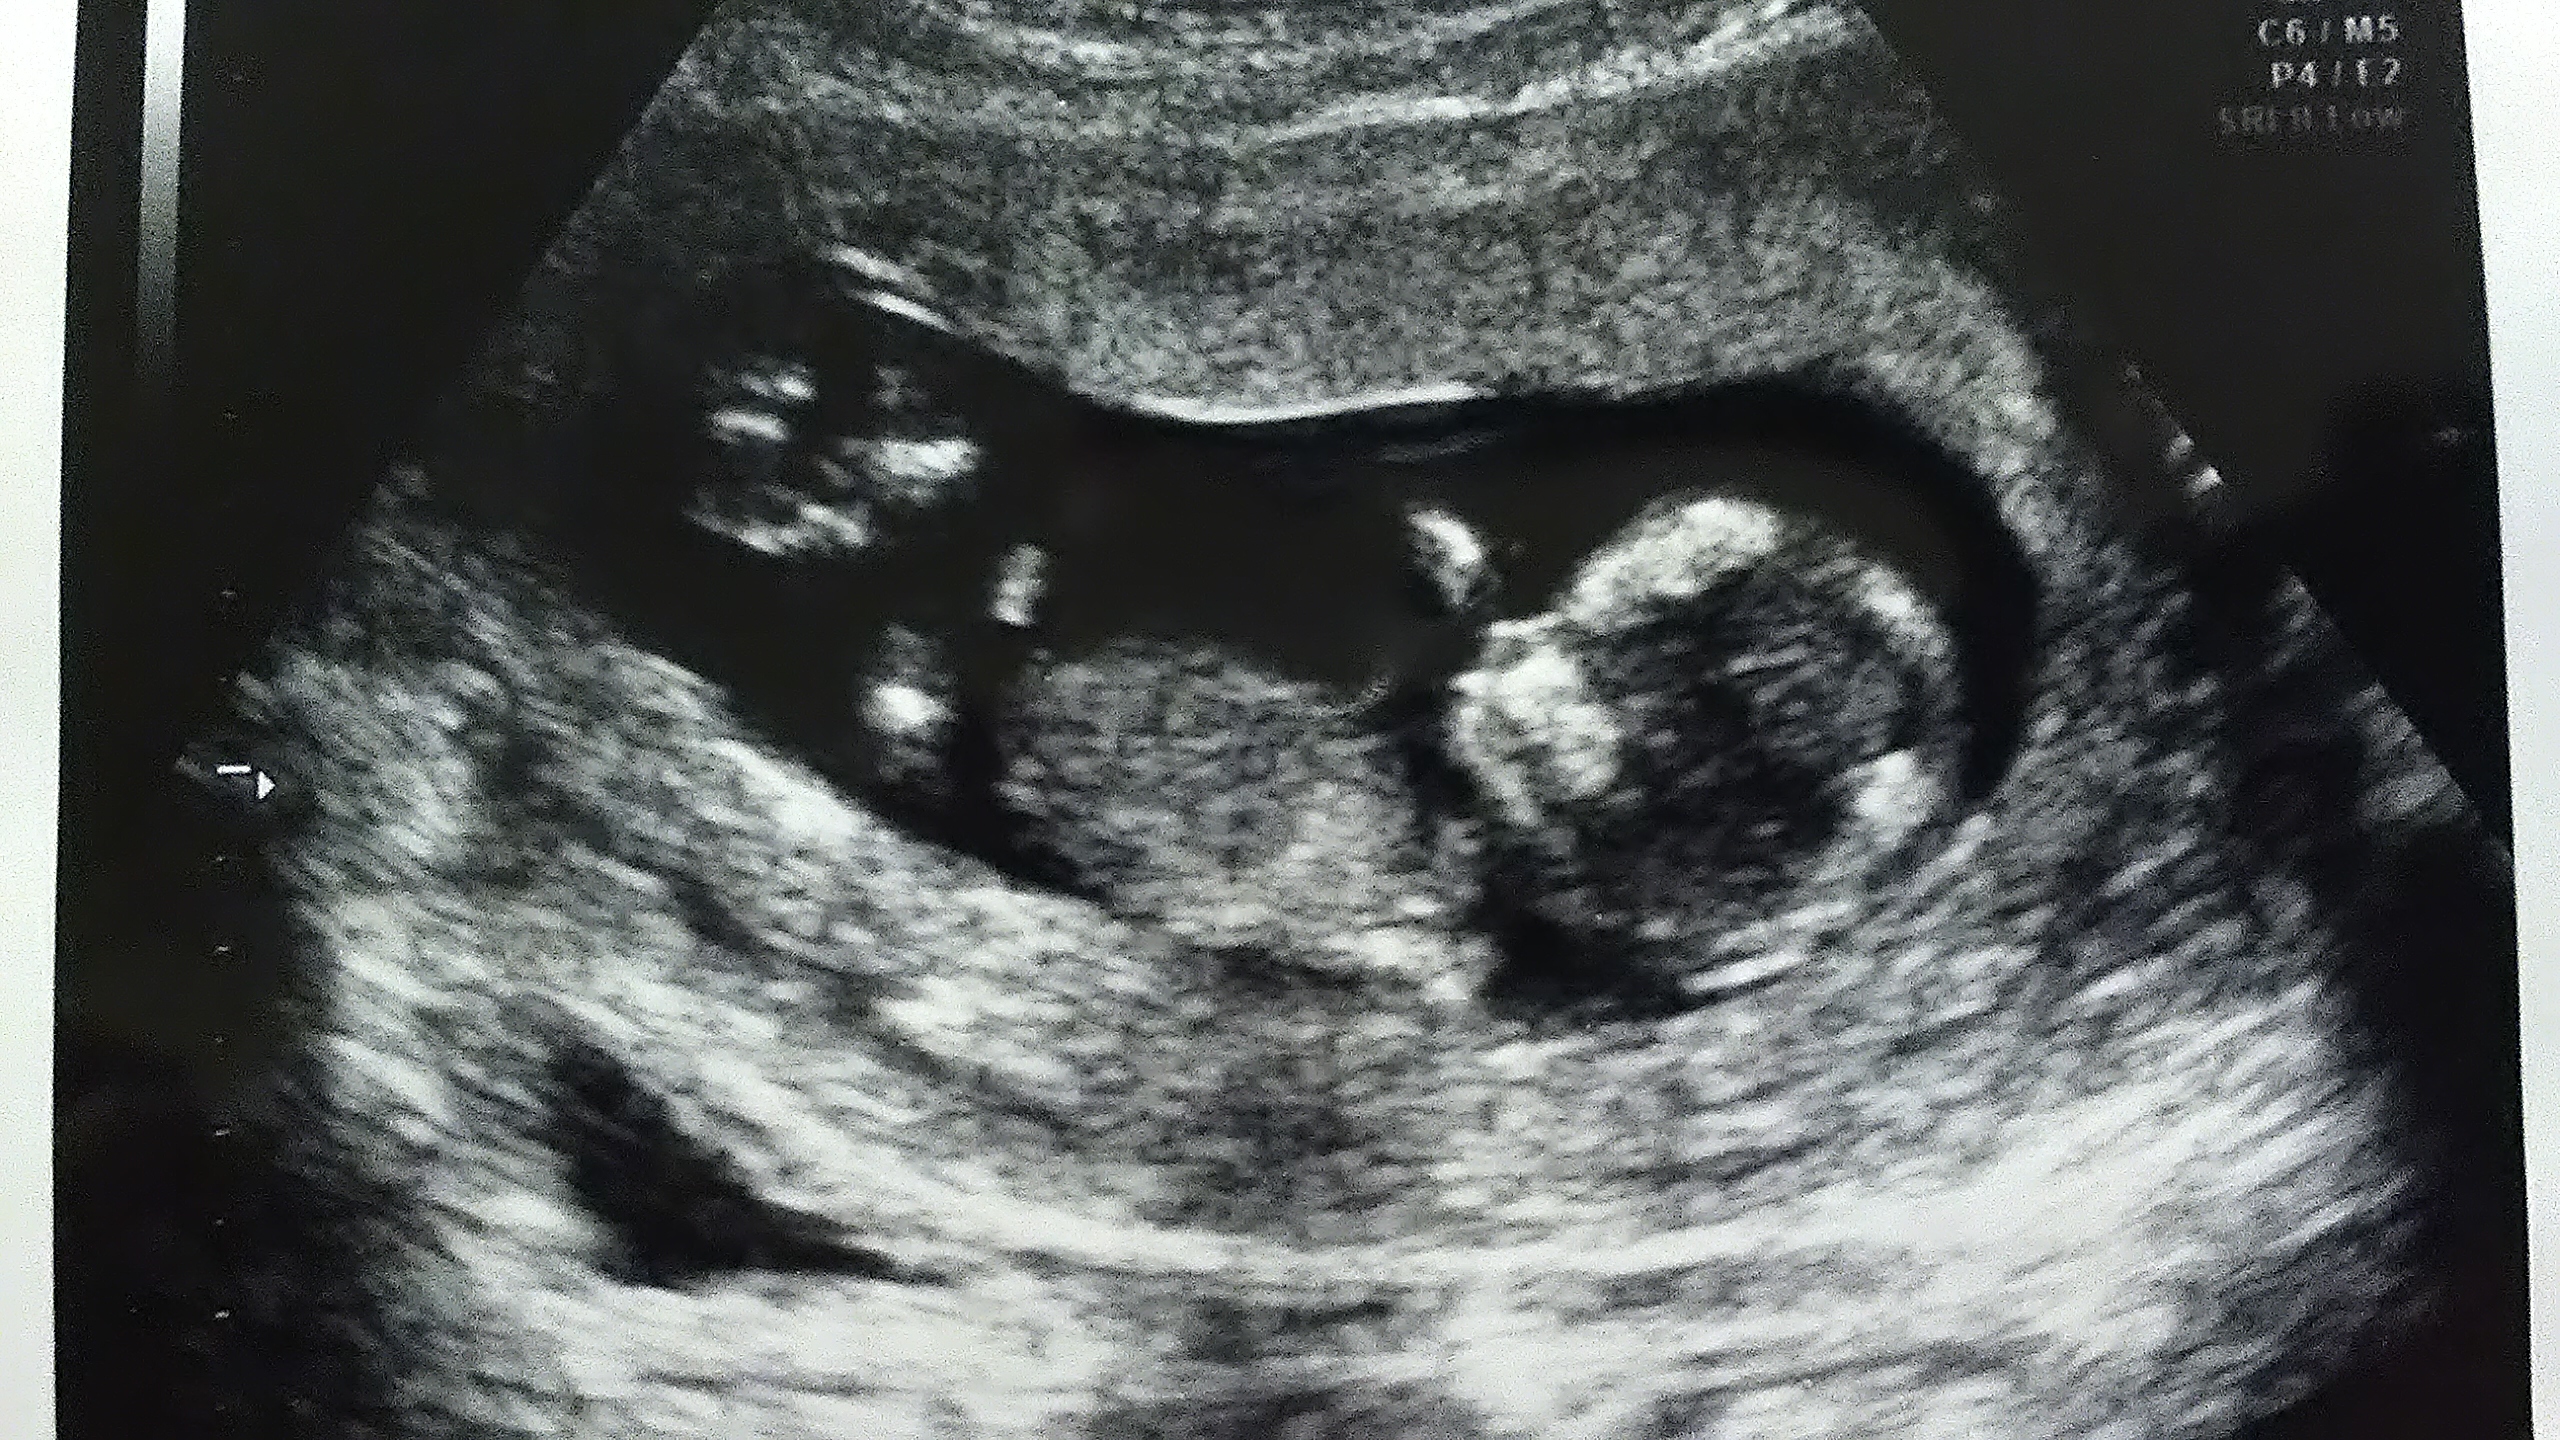 妊娠四ヶ月 妊娠十二週目 葉酸サプリ始めました 今日もライフは満タンだ